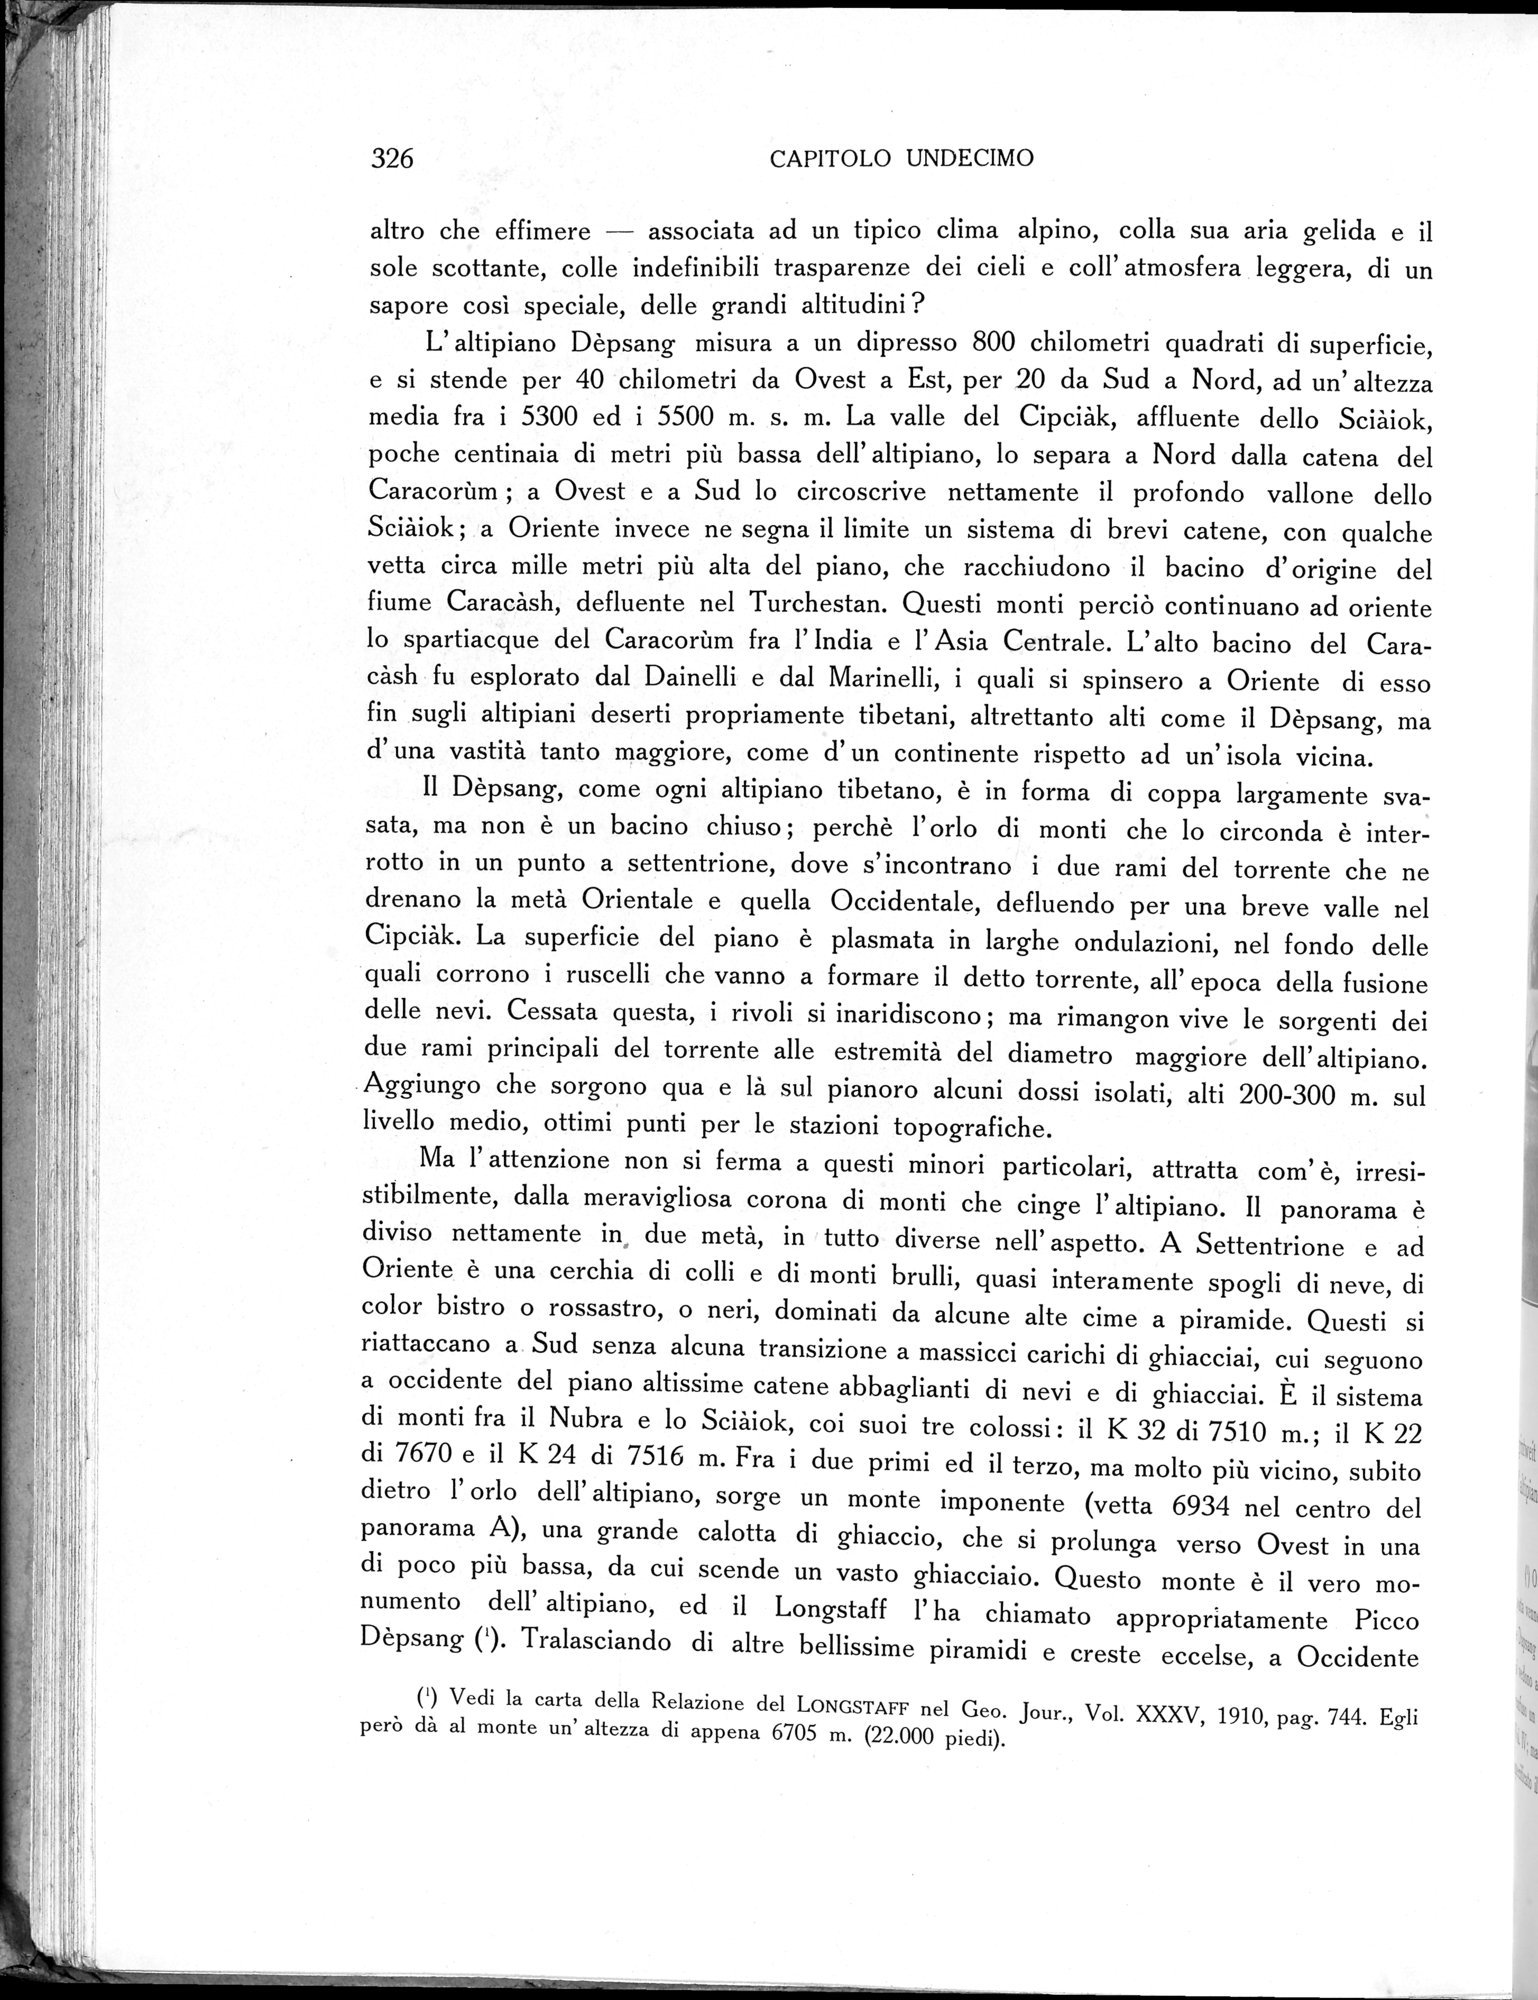 Storia della Spedizione Scientifica Italiana nel Himàlaia, Caracorùm e Turchestàn Cinese(1913-1914) : vol.1 / Page 376 (Grayscale High Resolution Image)